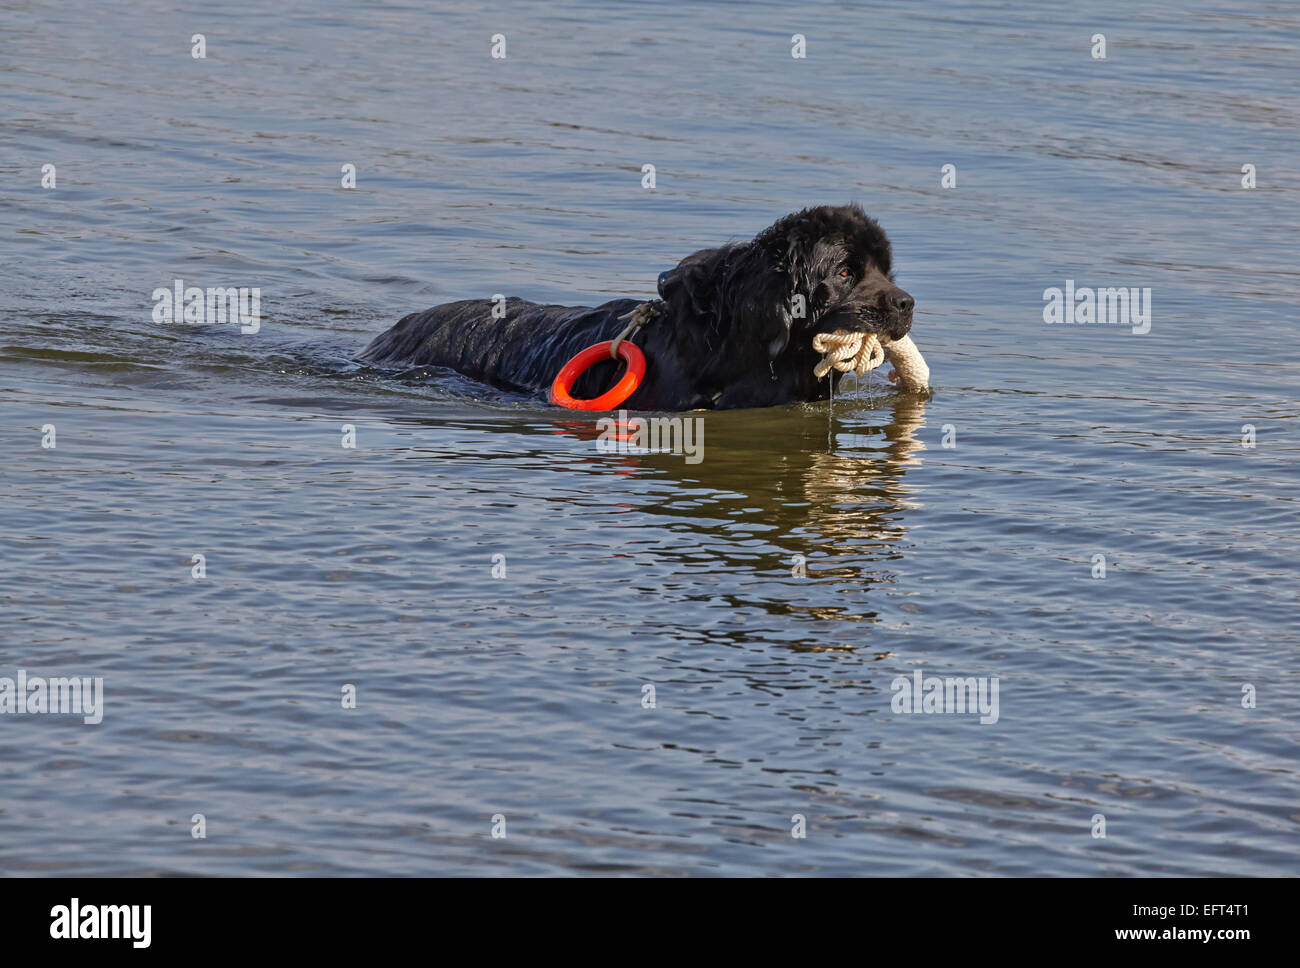 Newfoundland dog doing lifesaving training Stock Photo